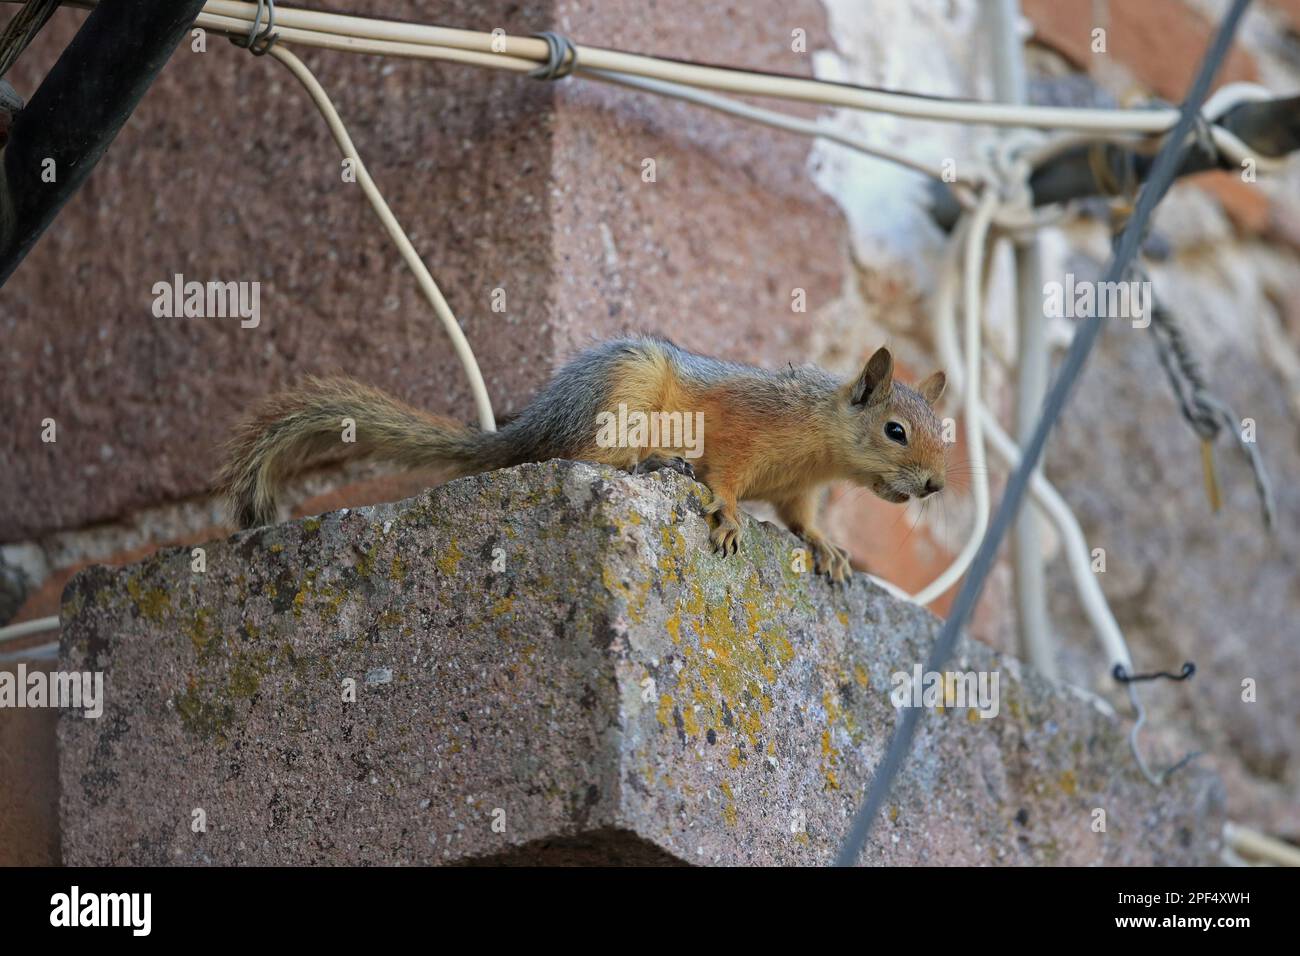 Persian Squirrel (Sciurus anomalus) adult, sitting on building, Lesvos, Greece Stock Photo